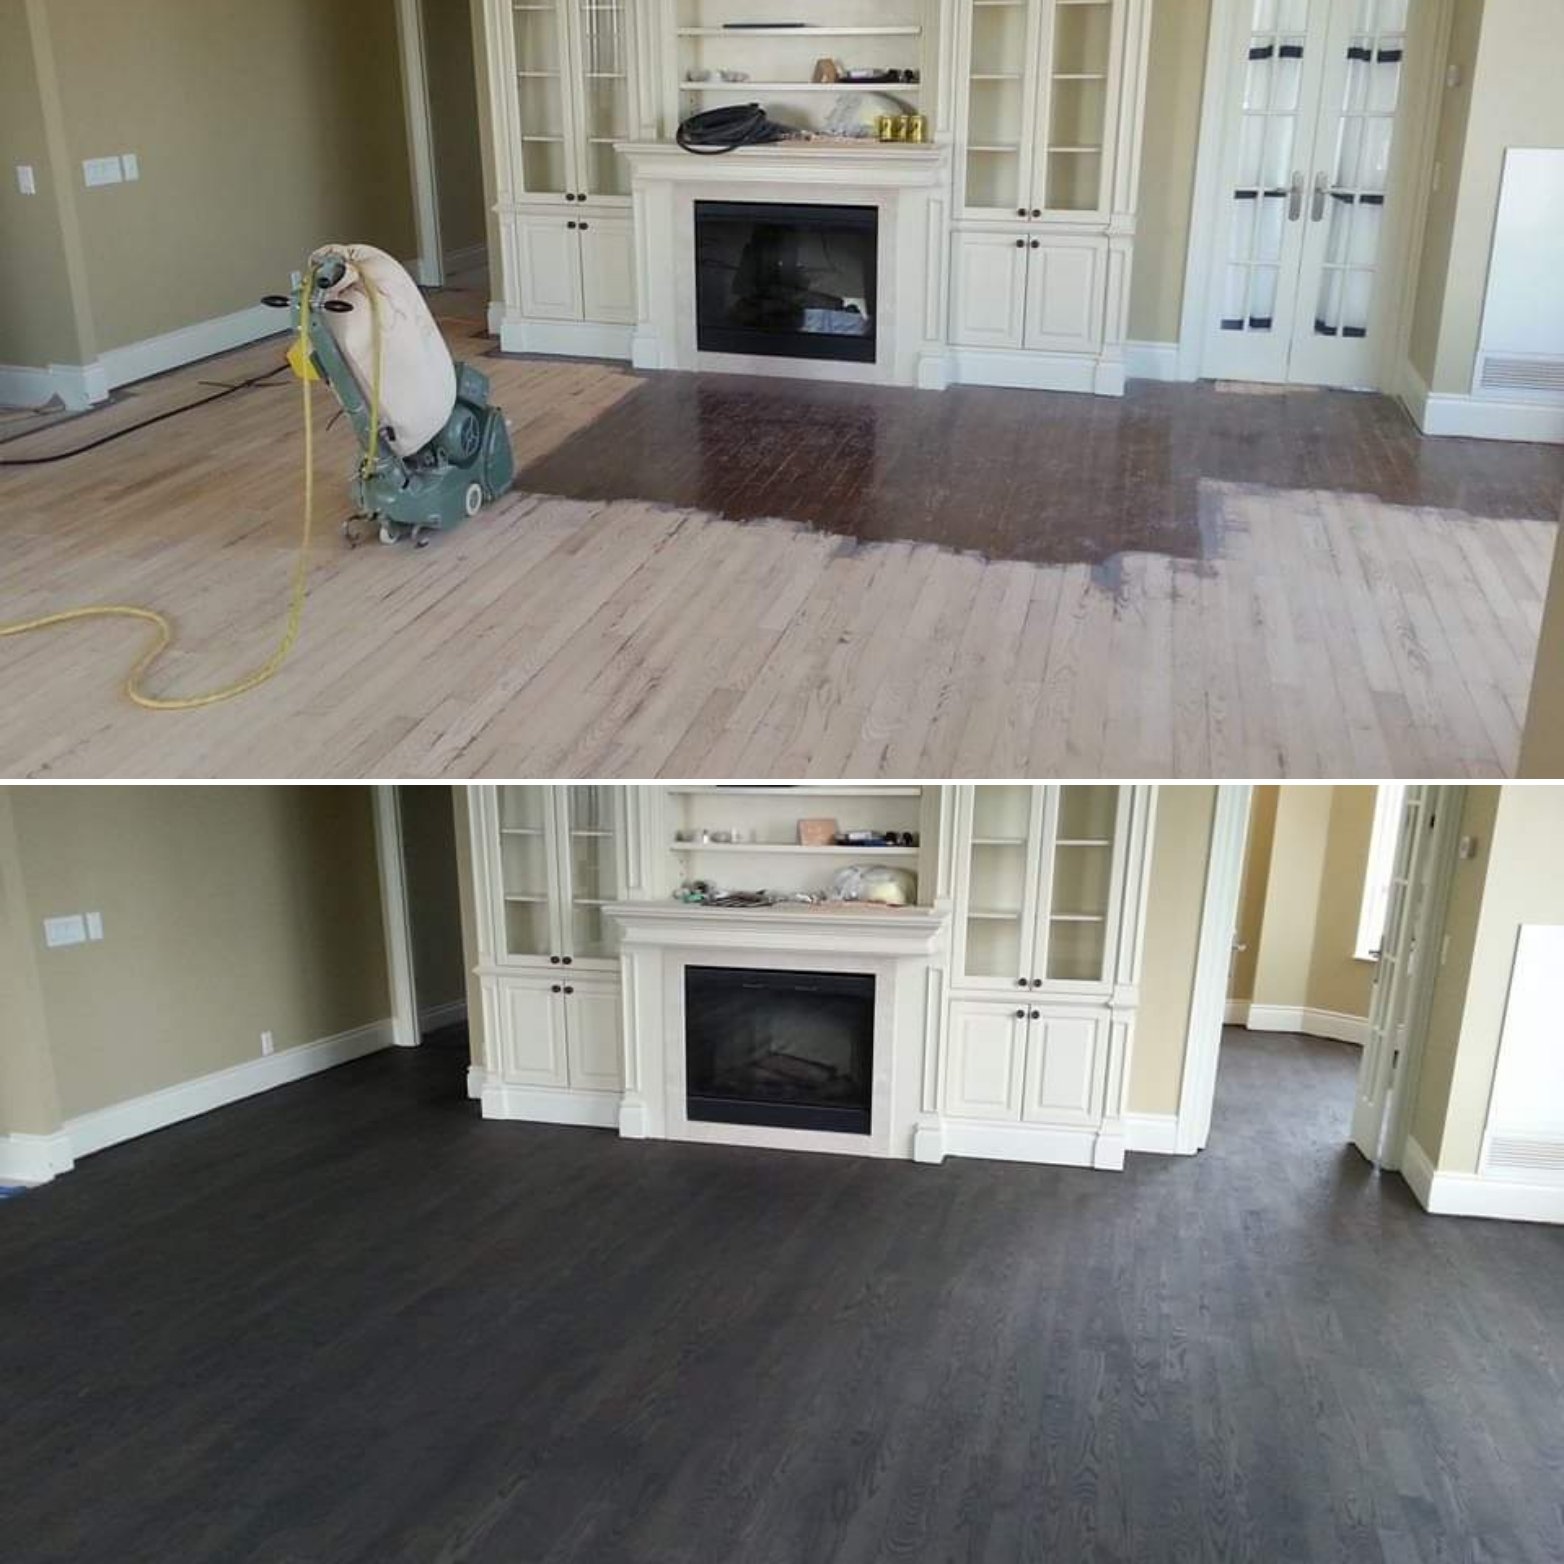 Refinished hardwood floor in condo